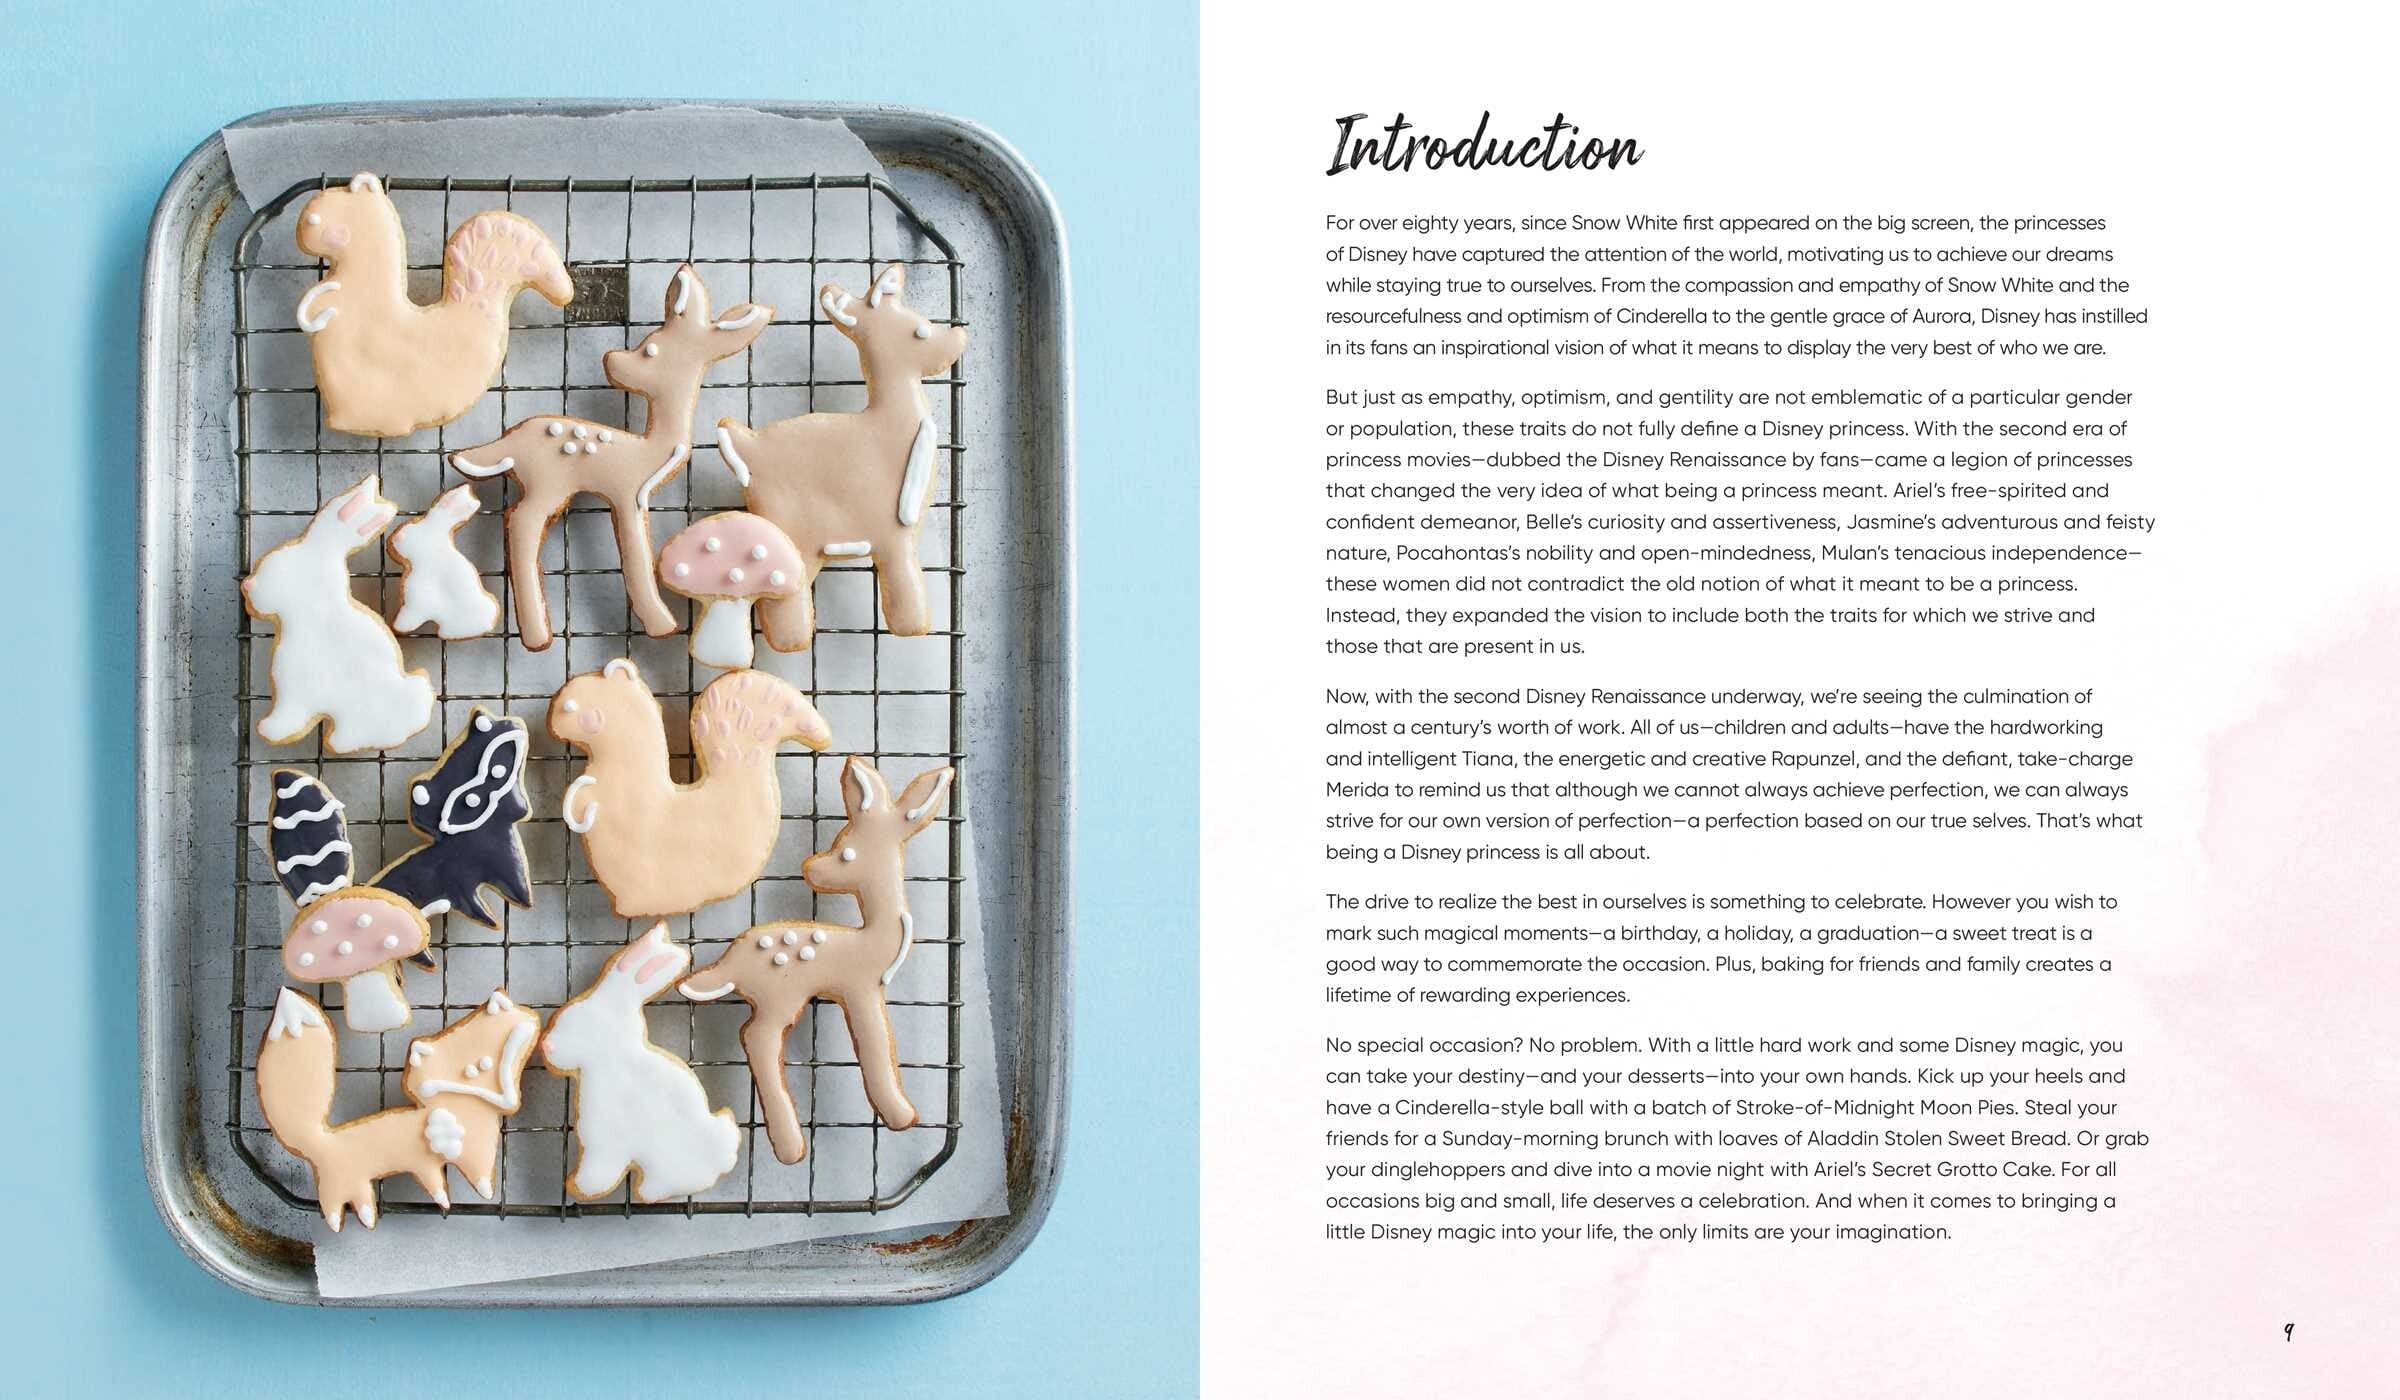 Simon & Schuster Disney Princess Baking - Little Miss Muffin Children & Home